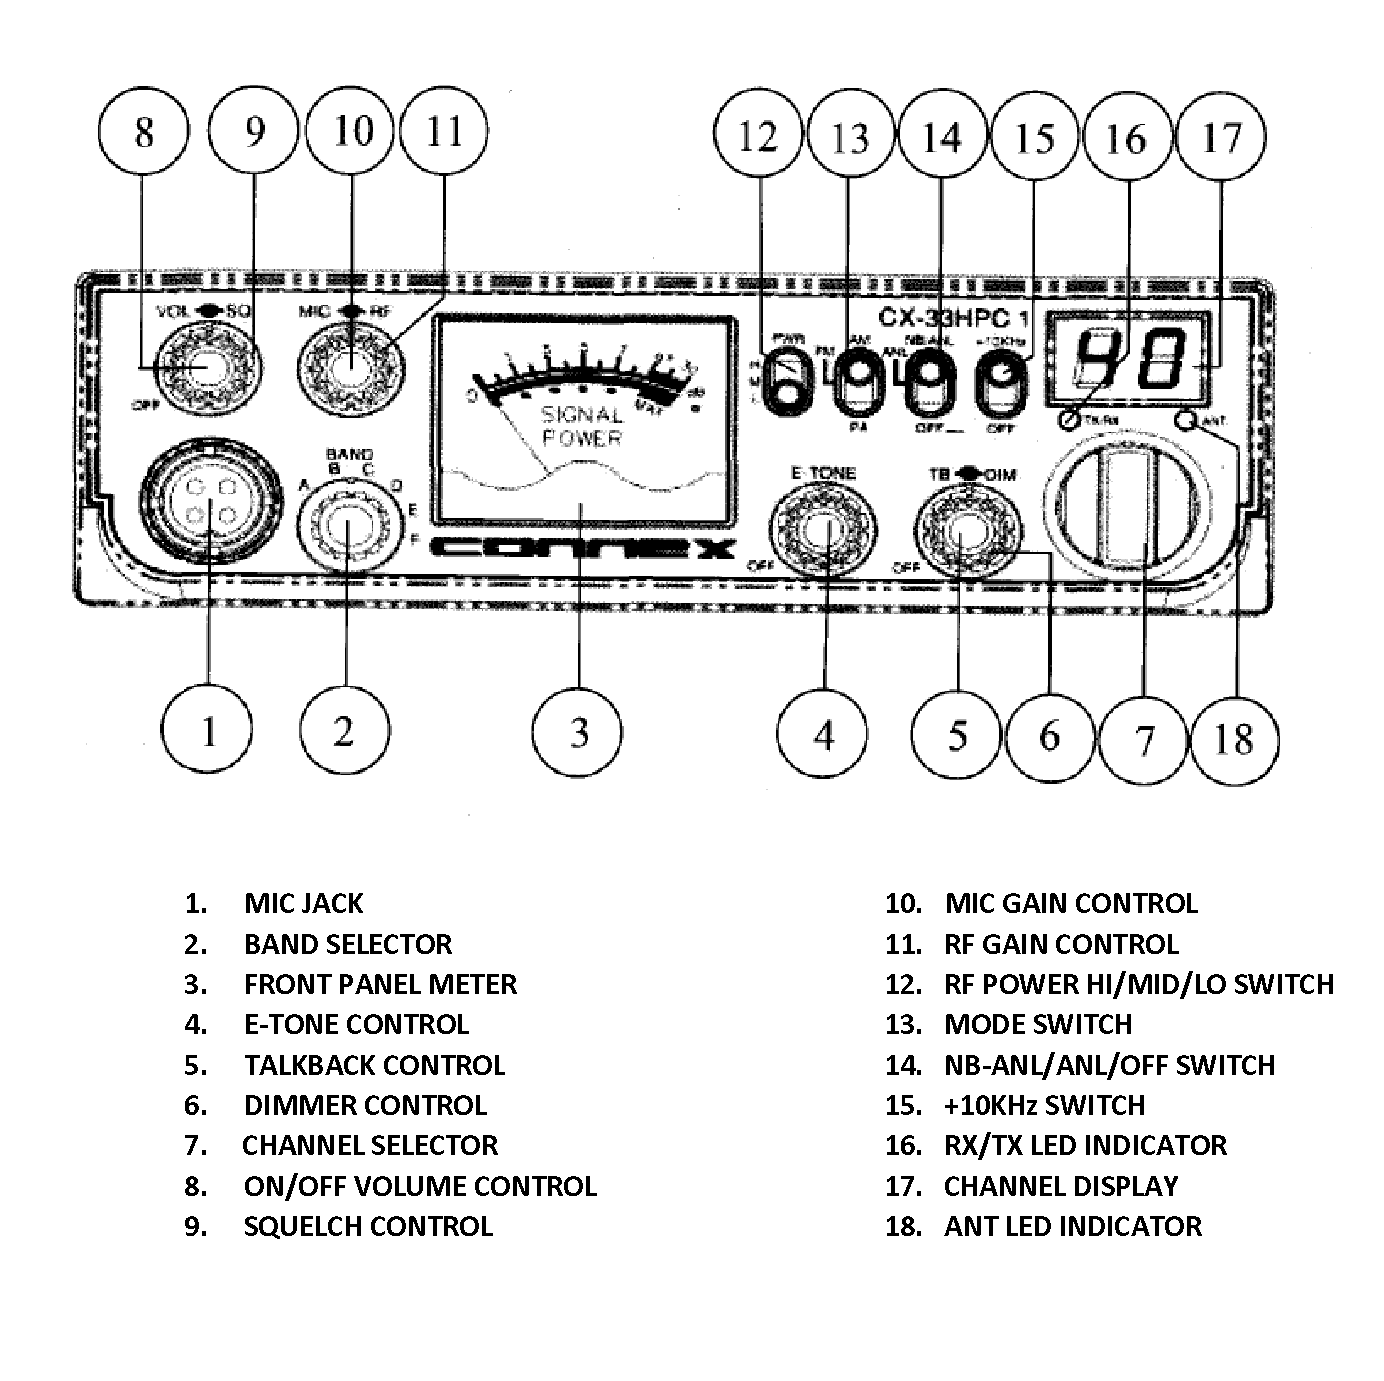 unconditional stockings position Connex (CX-33HPC1) - AM/FM/PA, Black, 10 Meter Amateur Mobile Radios